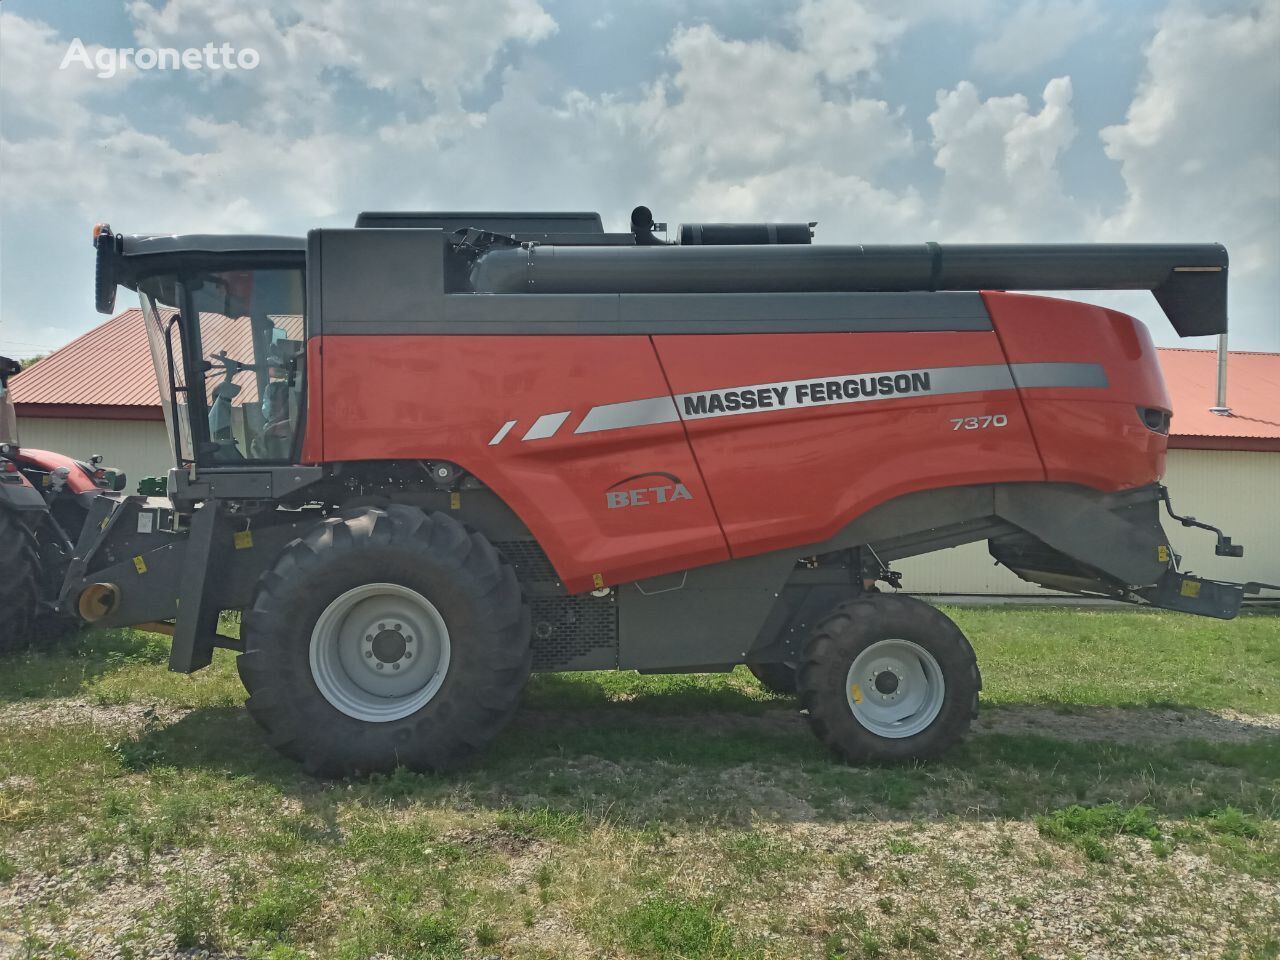 máy gặt đập liên hợp Massey Ferguson Beta 7370 (v naiavnosti v Ukraini) mới